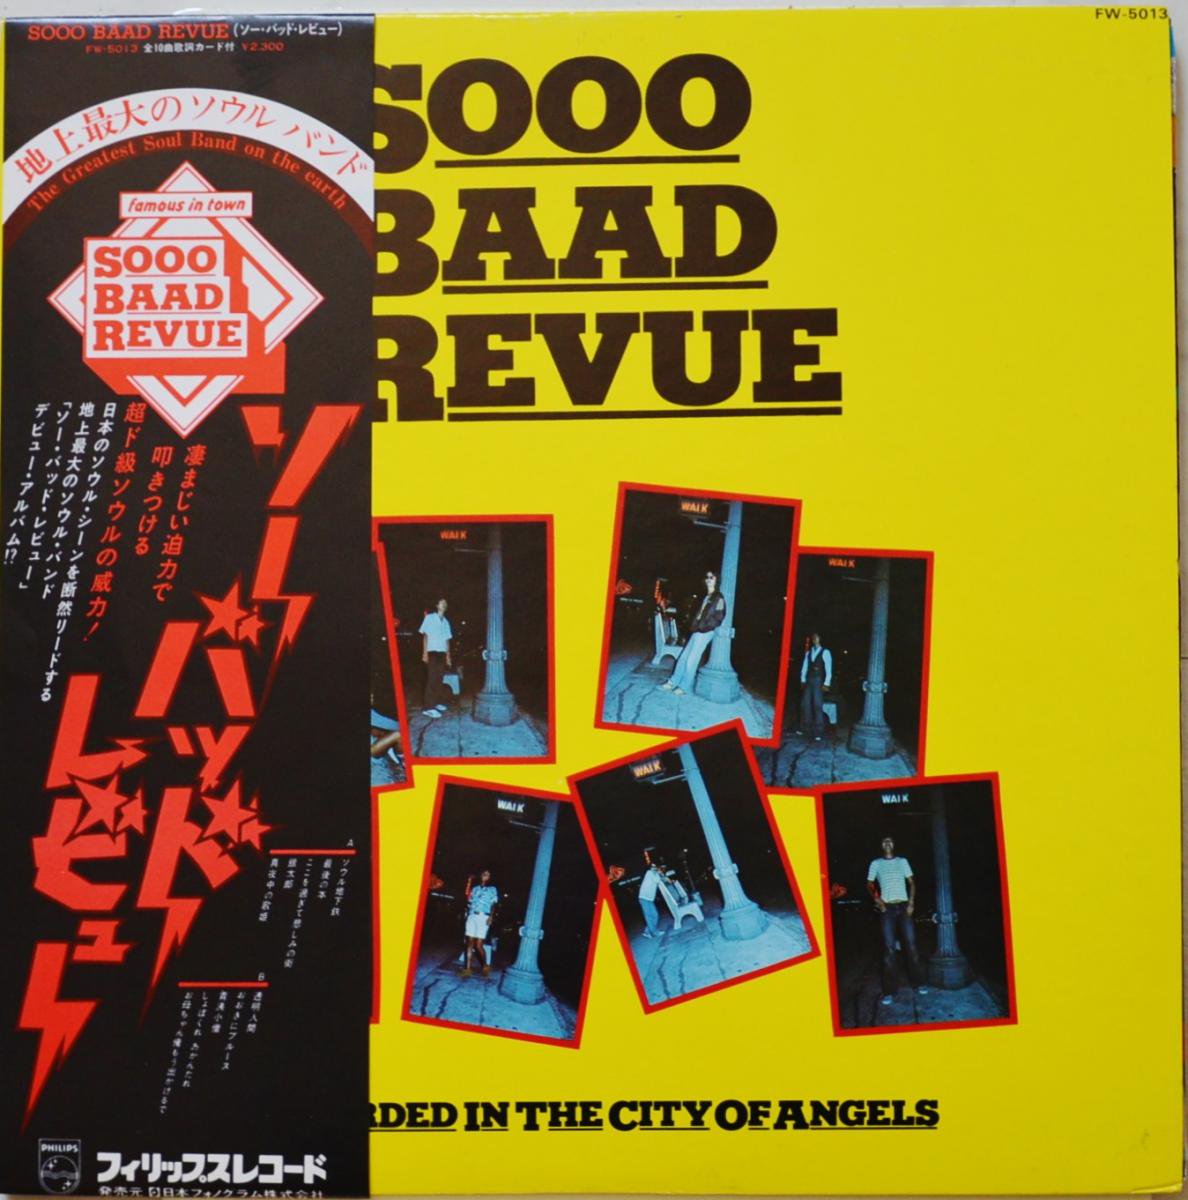 ソー・バッド・レビュー / SOOO BAAD REVUE (LP)